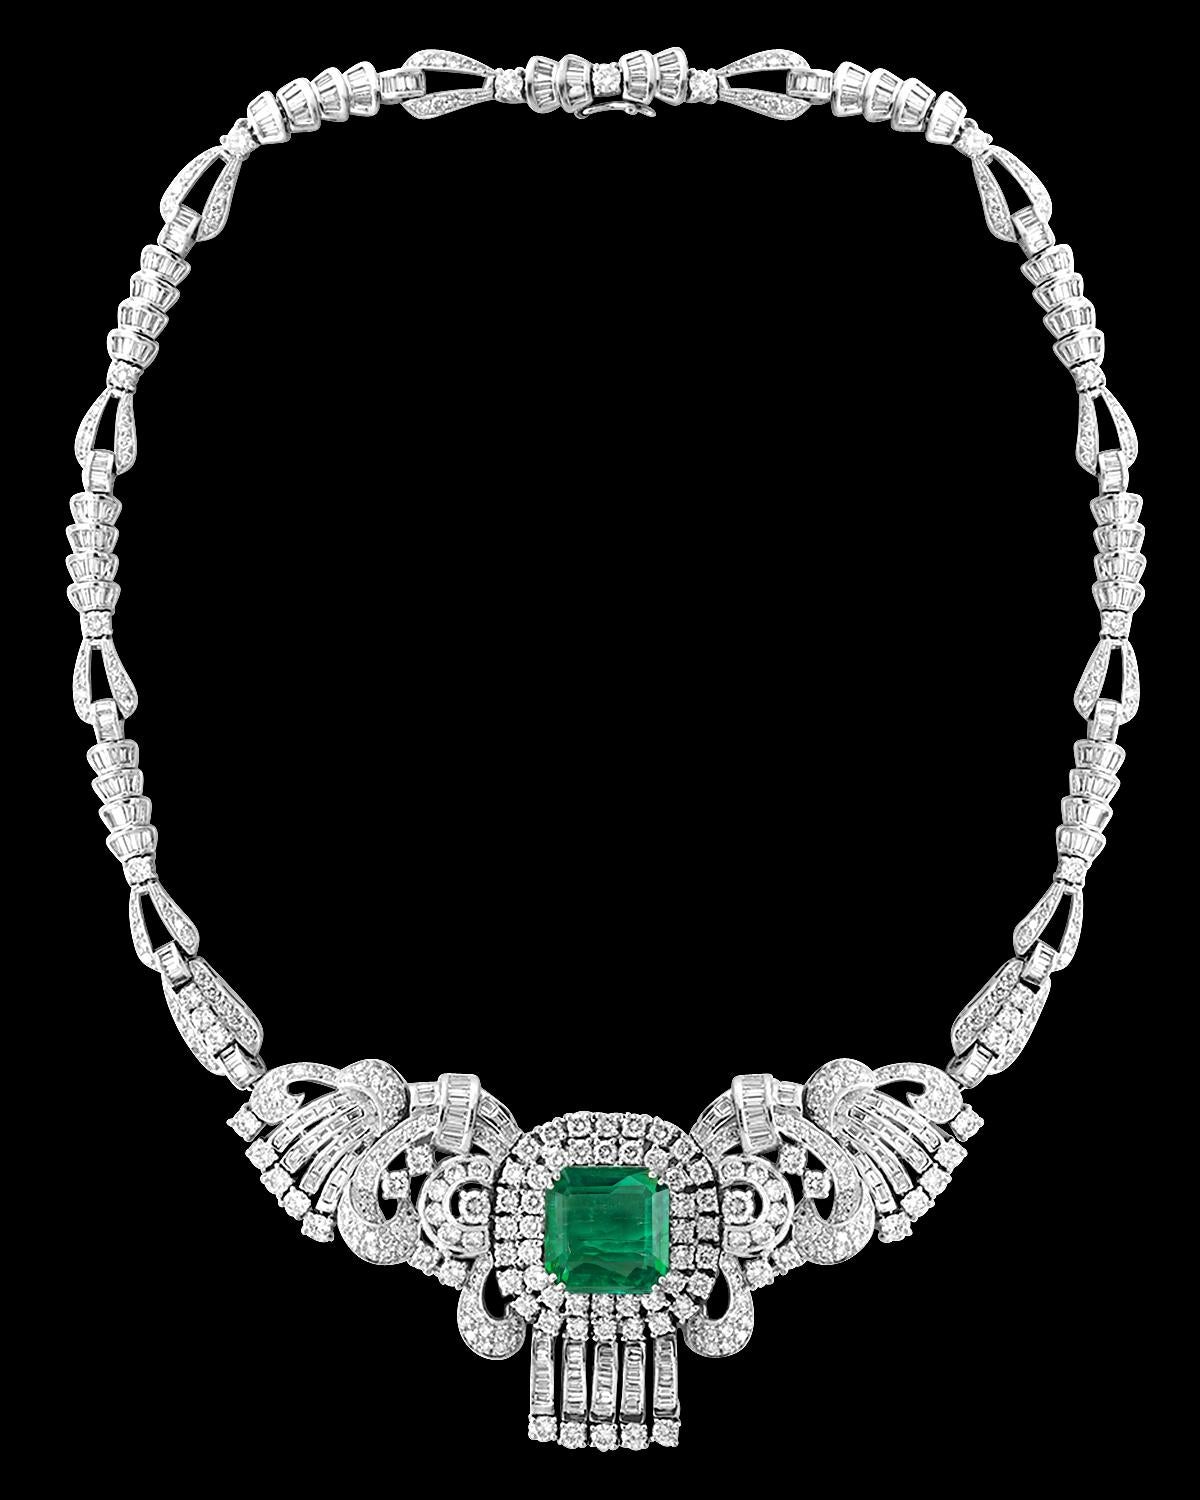 16 carat diamond necklace